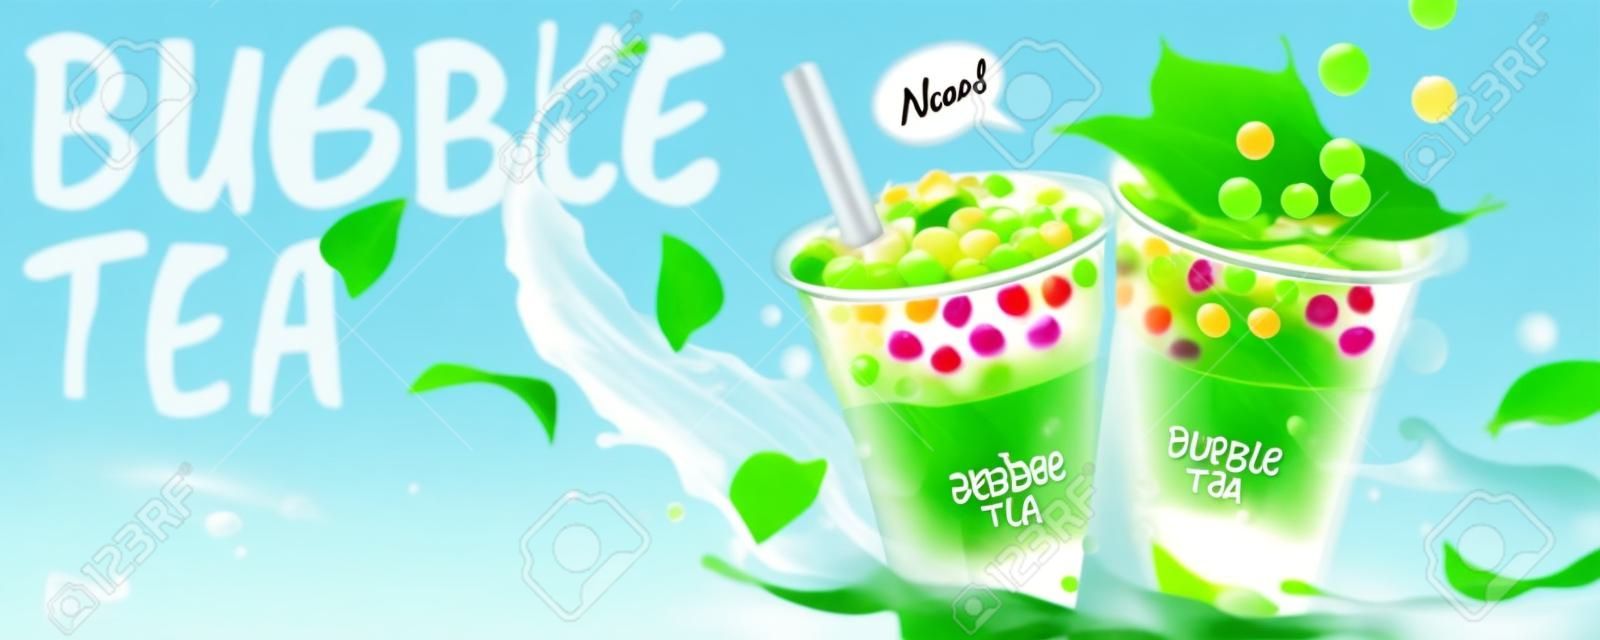 Bubble Tea Bannerwerbung mit spritzender Milch und grünen Blättern, 3D-Darstellung